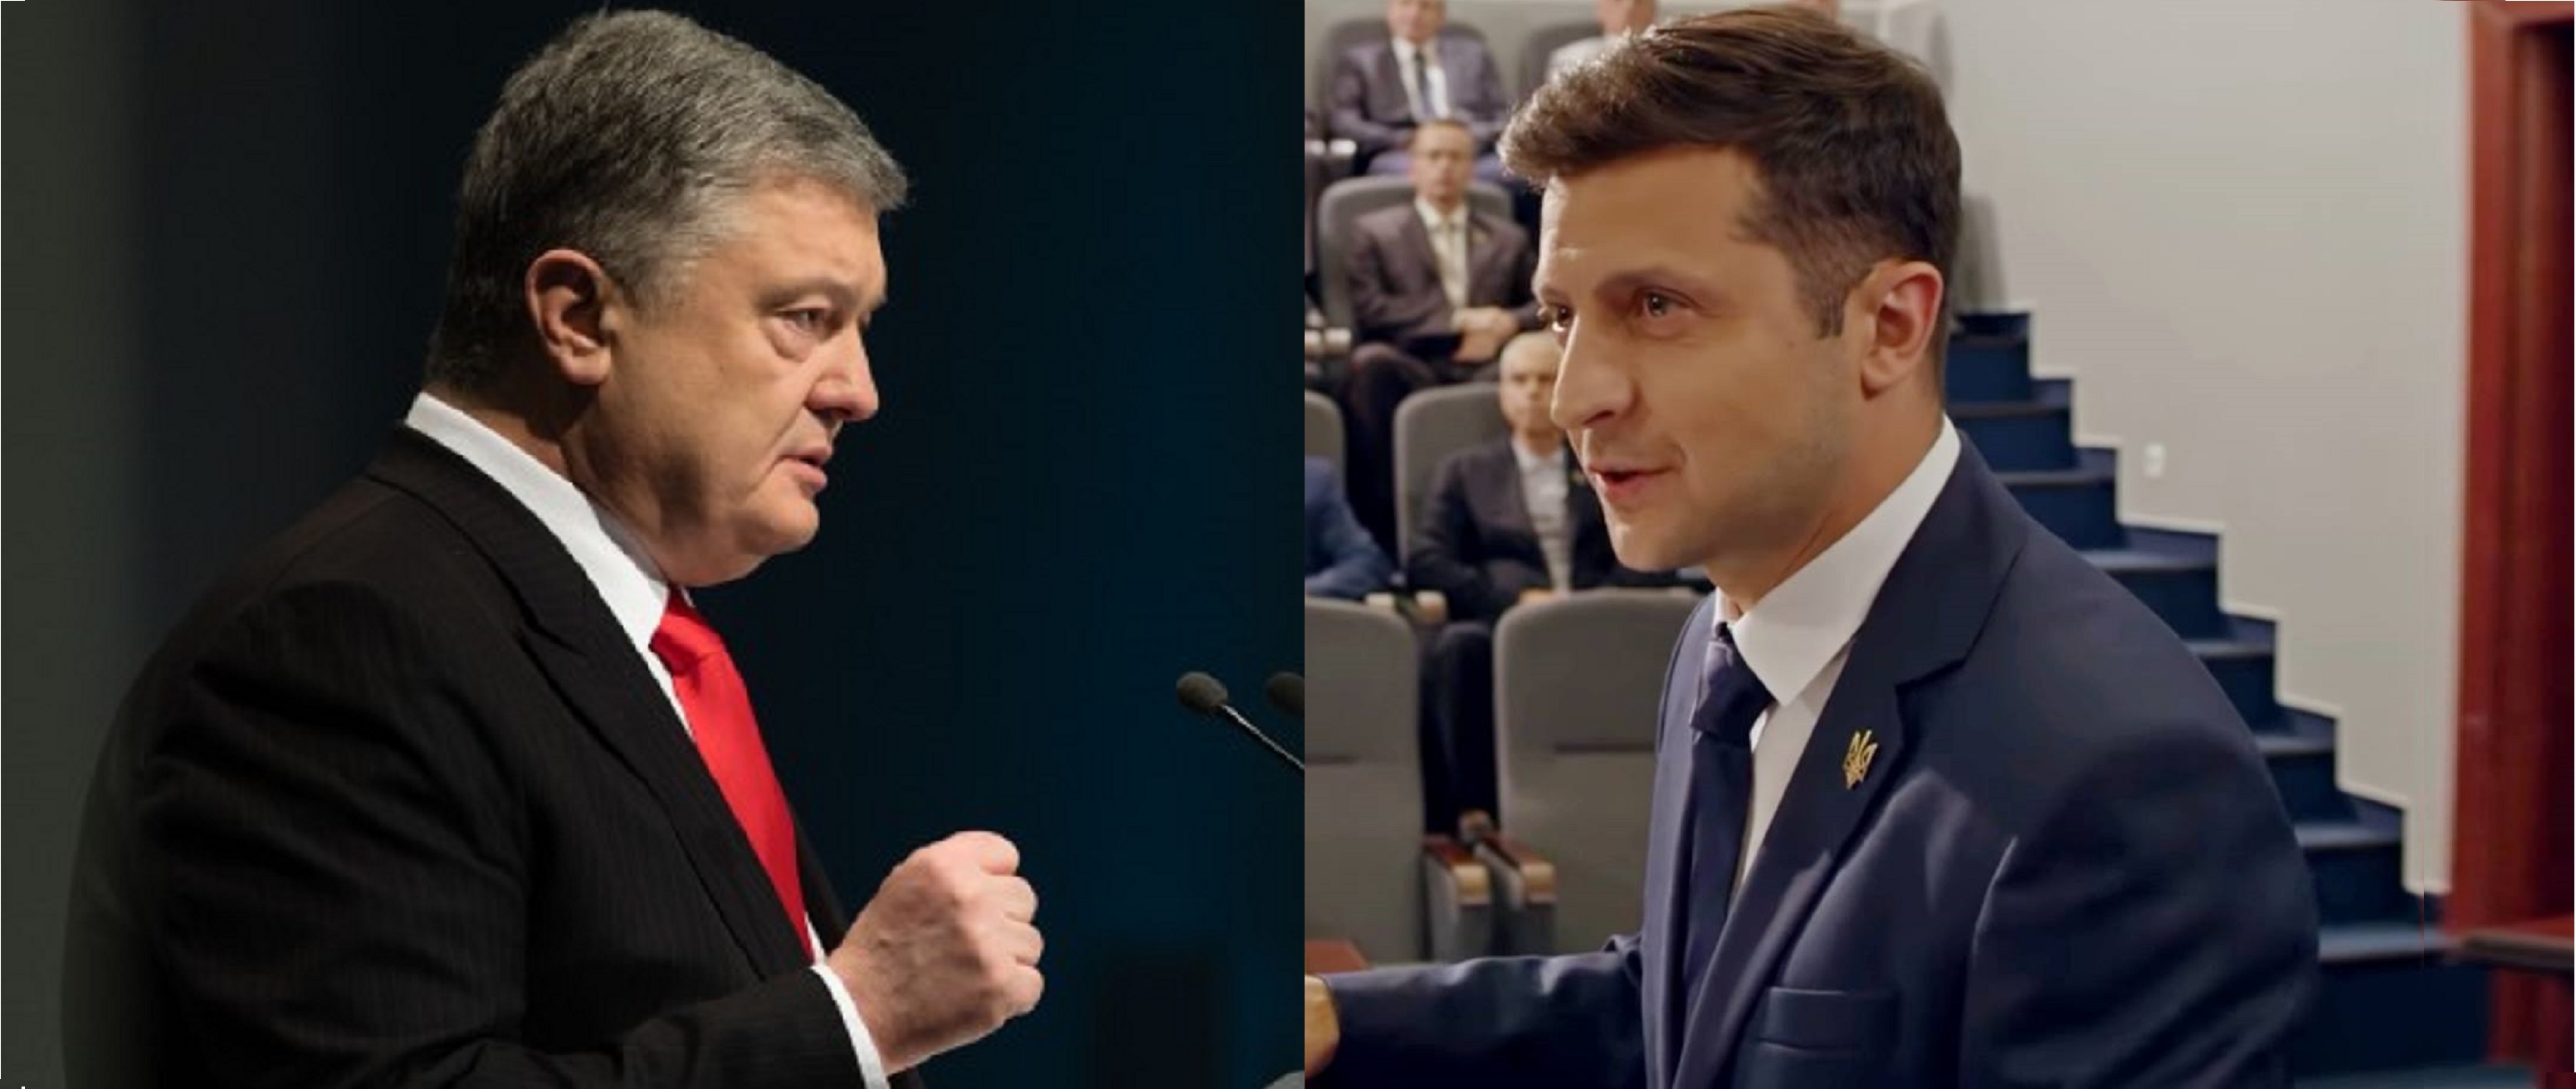 Какими должны быть дебаты между Порошенко и Зеленским – всеукраинский опрос